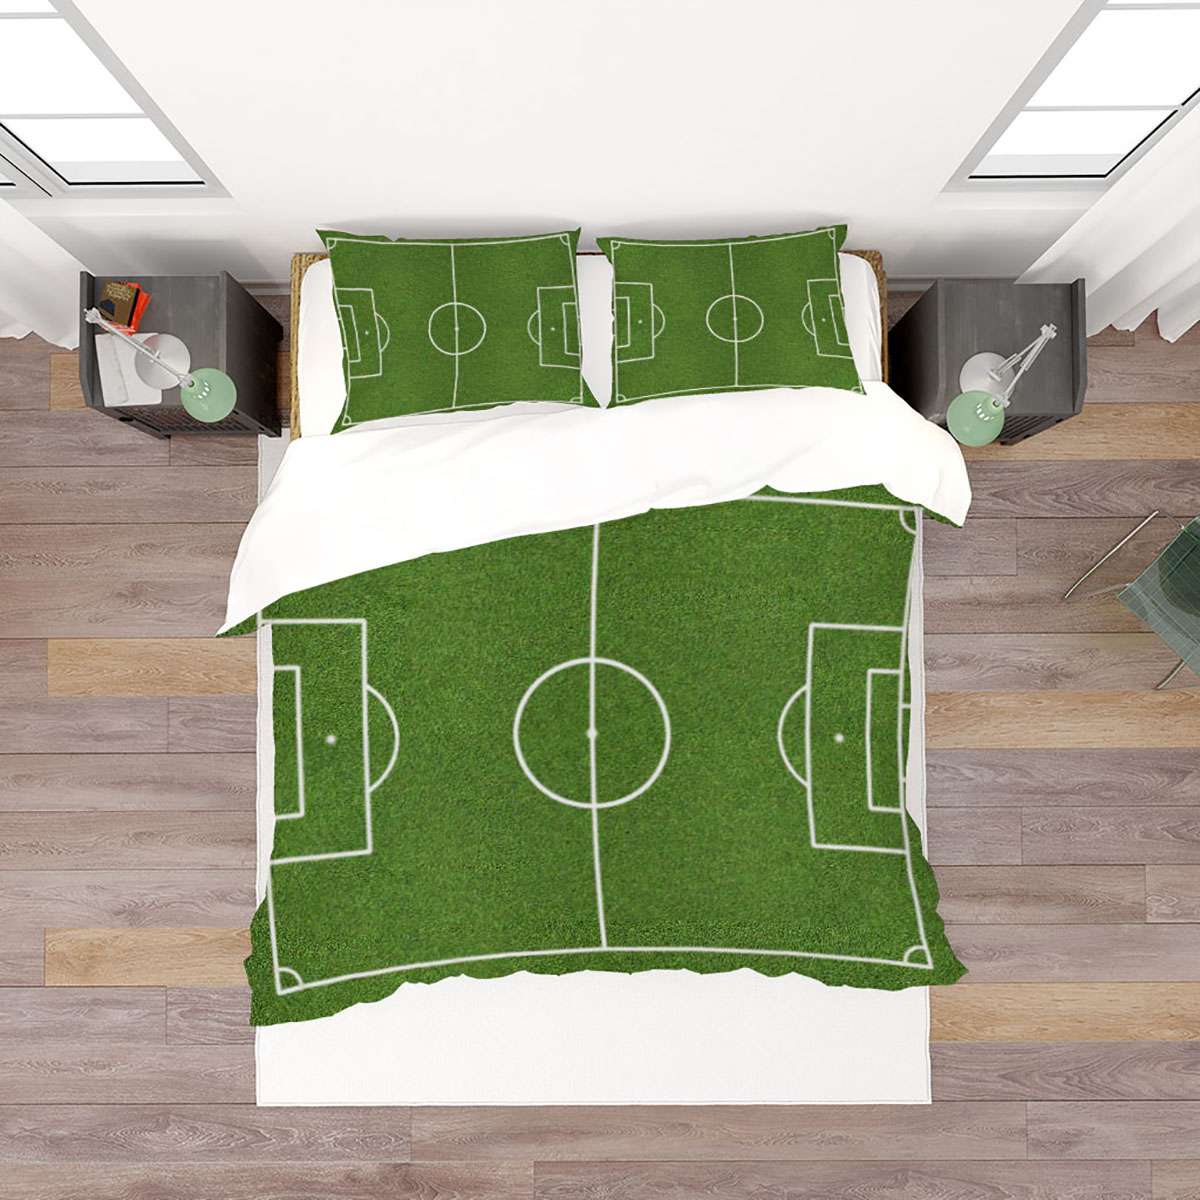 3D-Printed-Football-Basketball-Bowling-GA-Bedding-Set-Bedlinen-Duvet-Cover-Pillowcases-for-Bedding-S-1788703-4